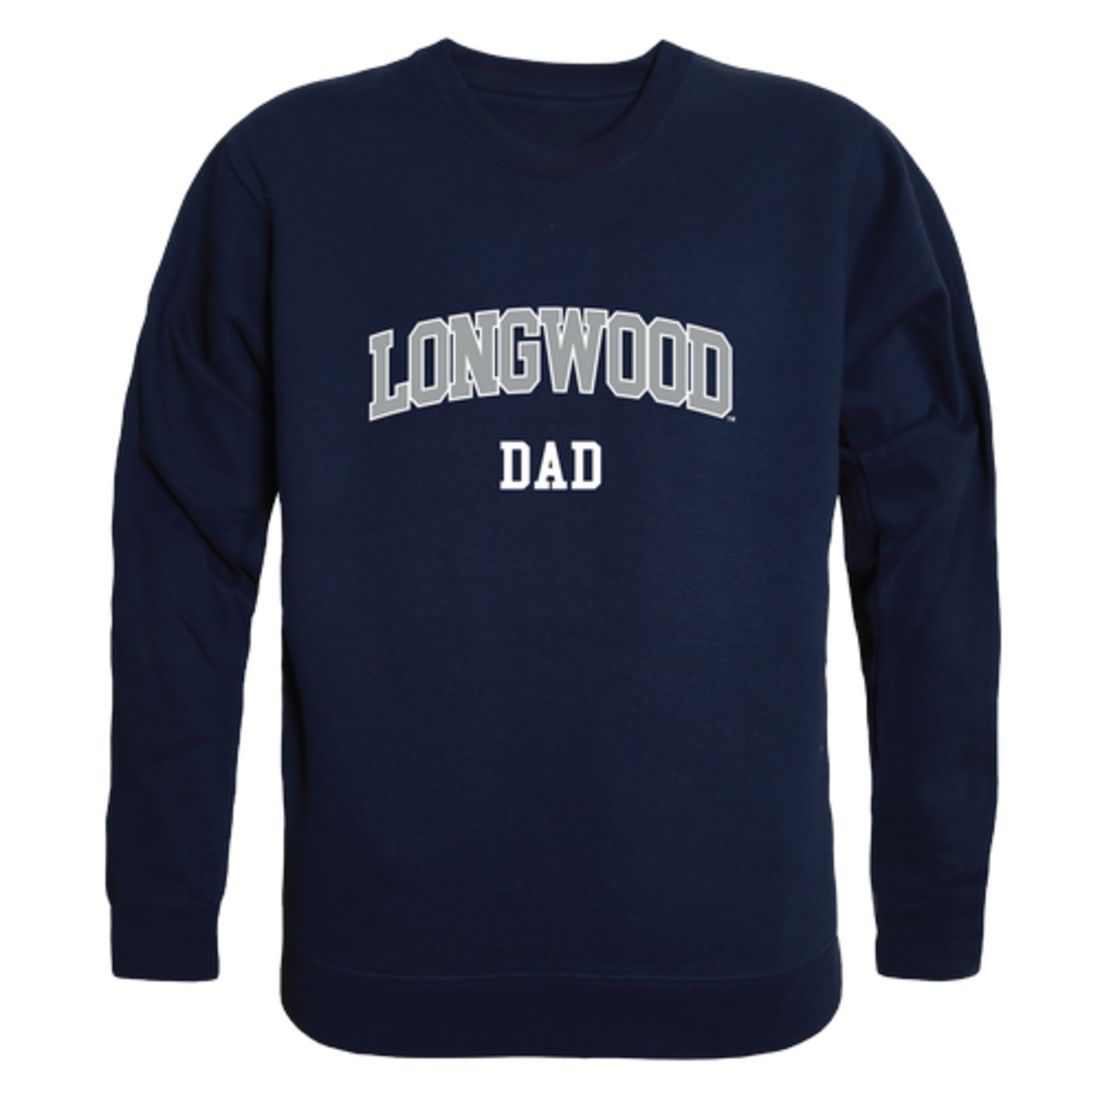 Longwood University Lancers Dad Fleece Crewneck Pullover Sweatshirt Heather Grey-Campus-Wardrobe